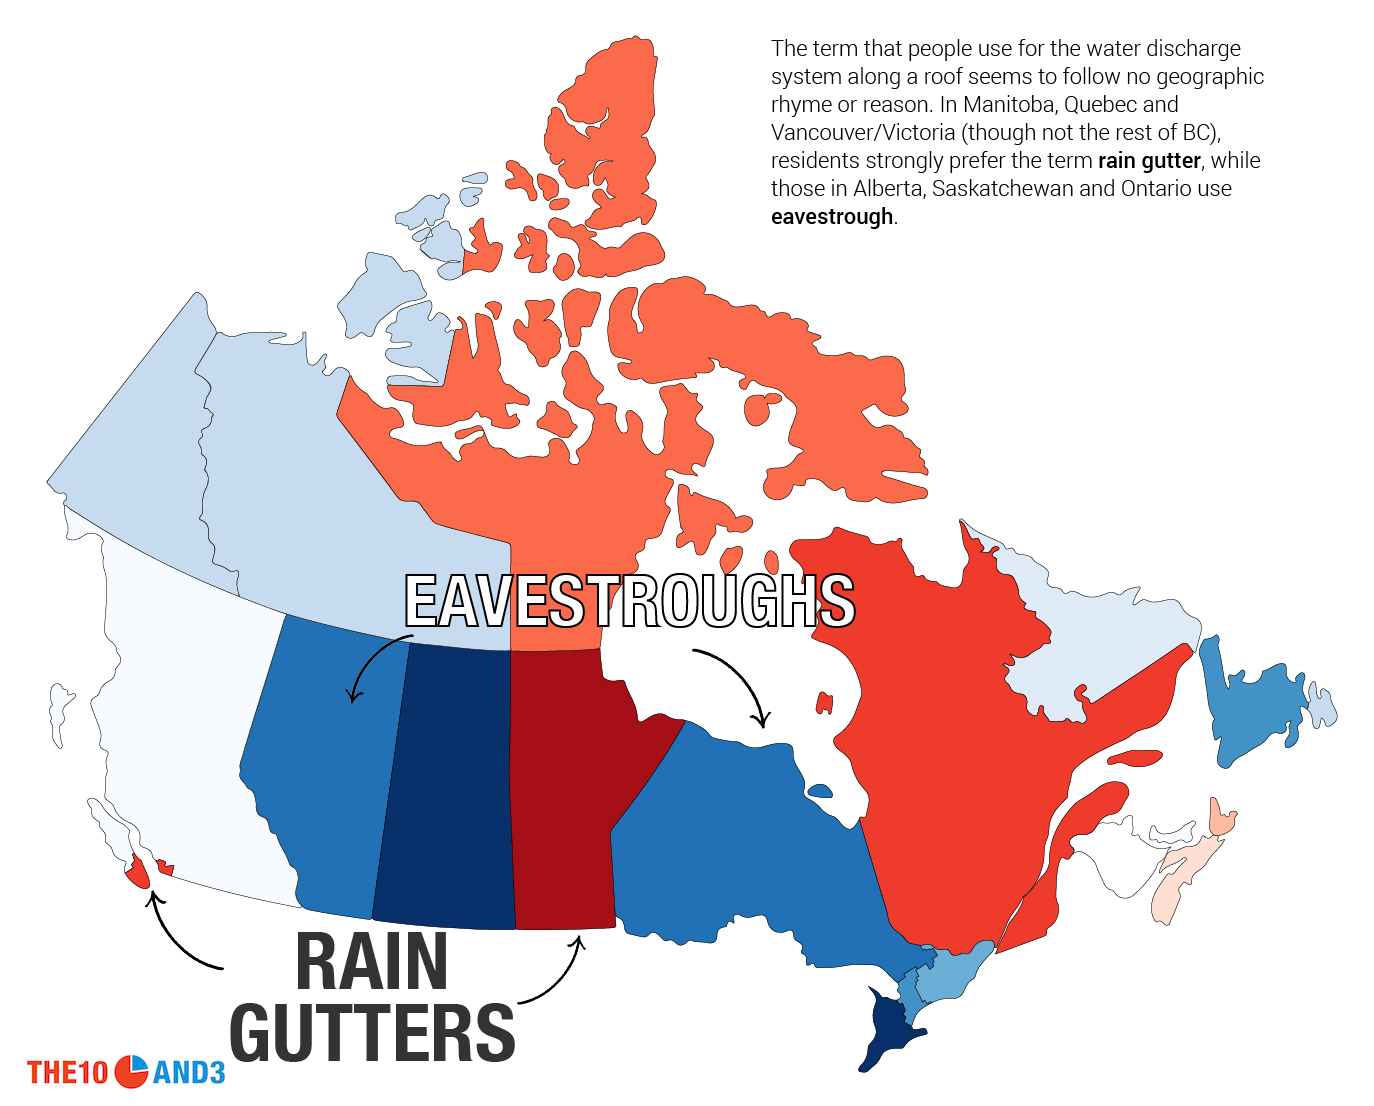 Rain Gutters vs. Eavestroughs